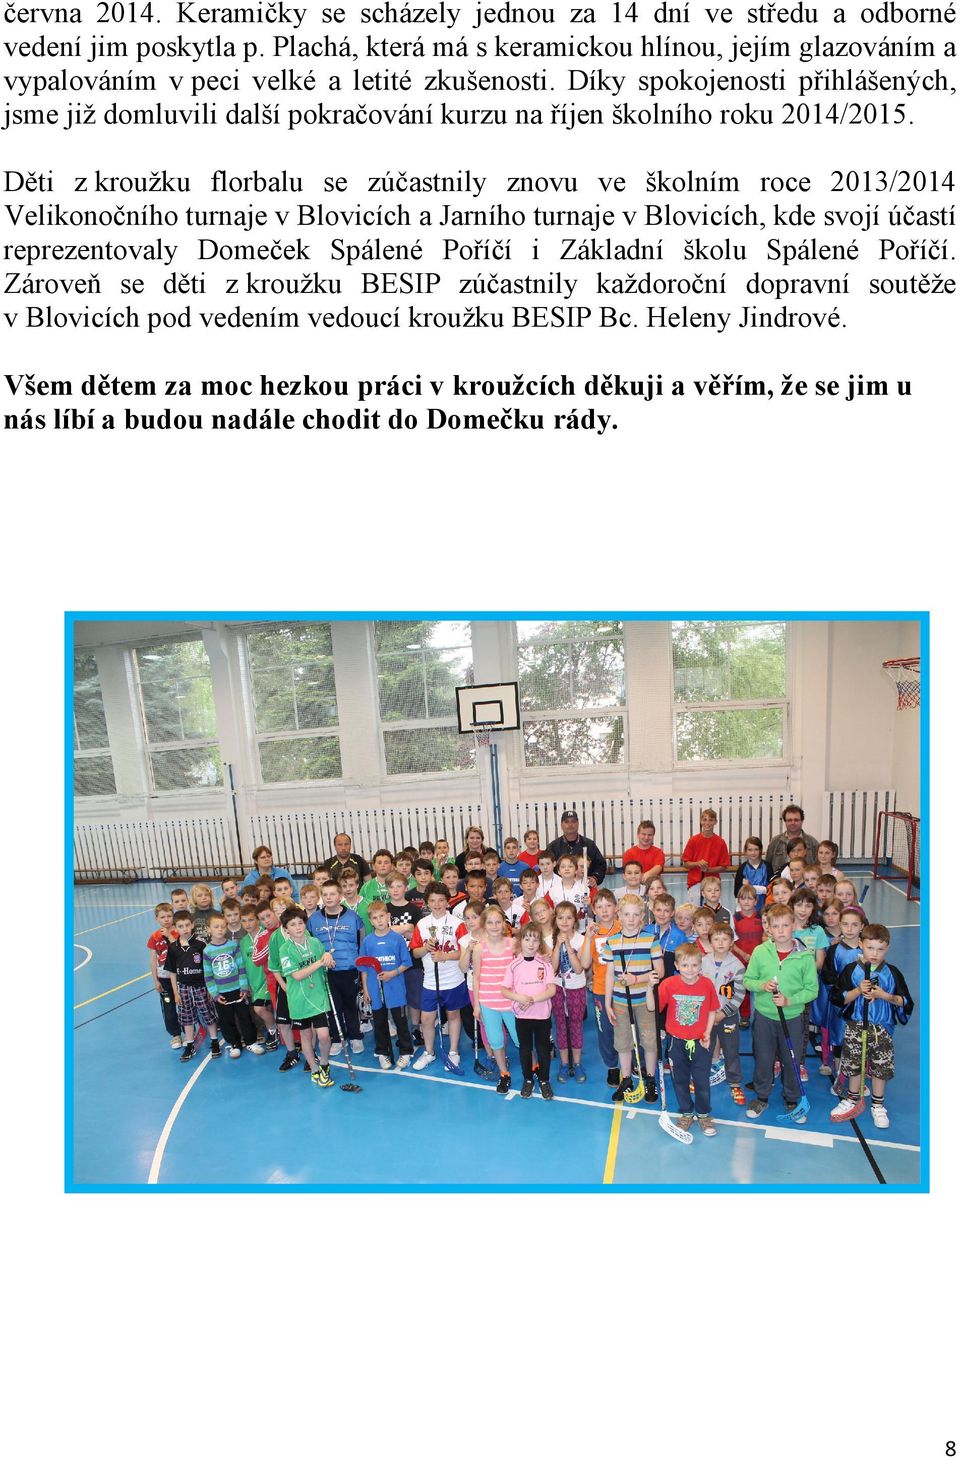 Děti z kroužku florbalu se zúčastnily znovu ve školním roce 2013/2014 Velikonočního turnaje v Blovicích a Jarního turnaje v Blovicích, kde svojí účastí reprezentovaly Domeček Spálené Poříčí i